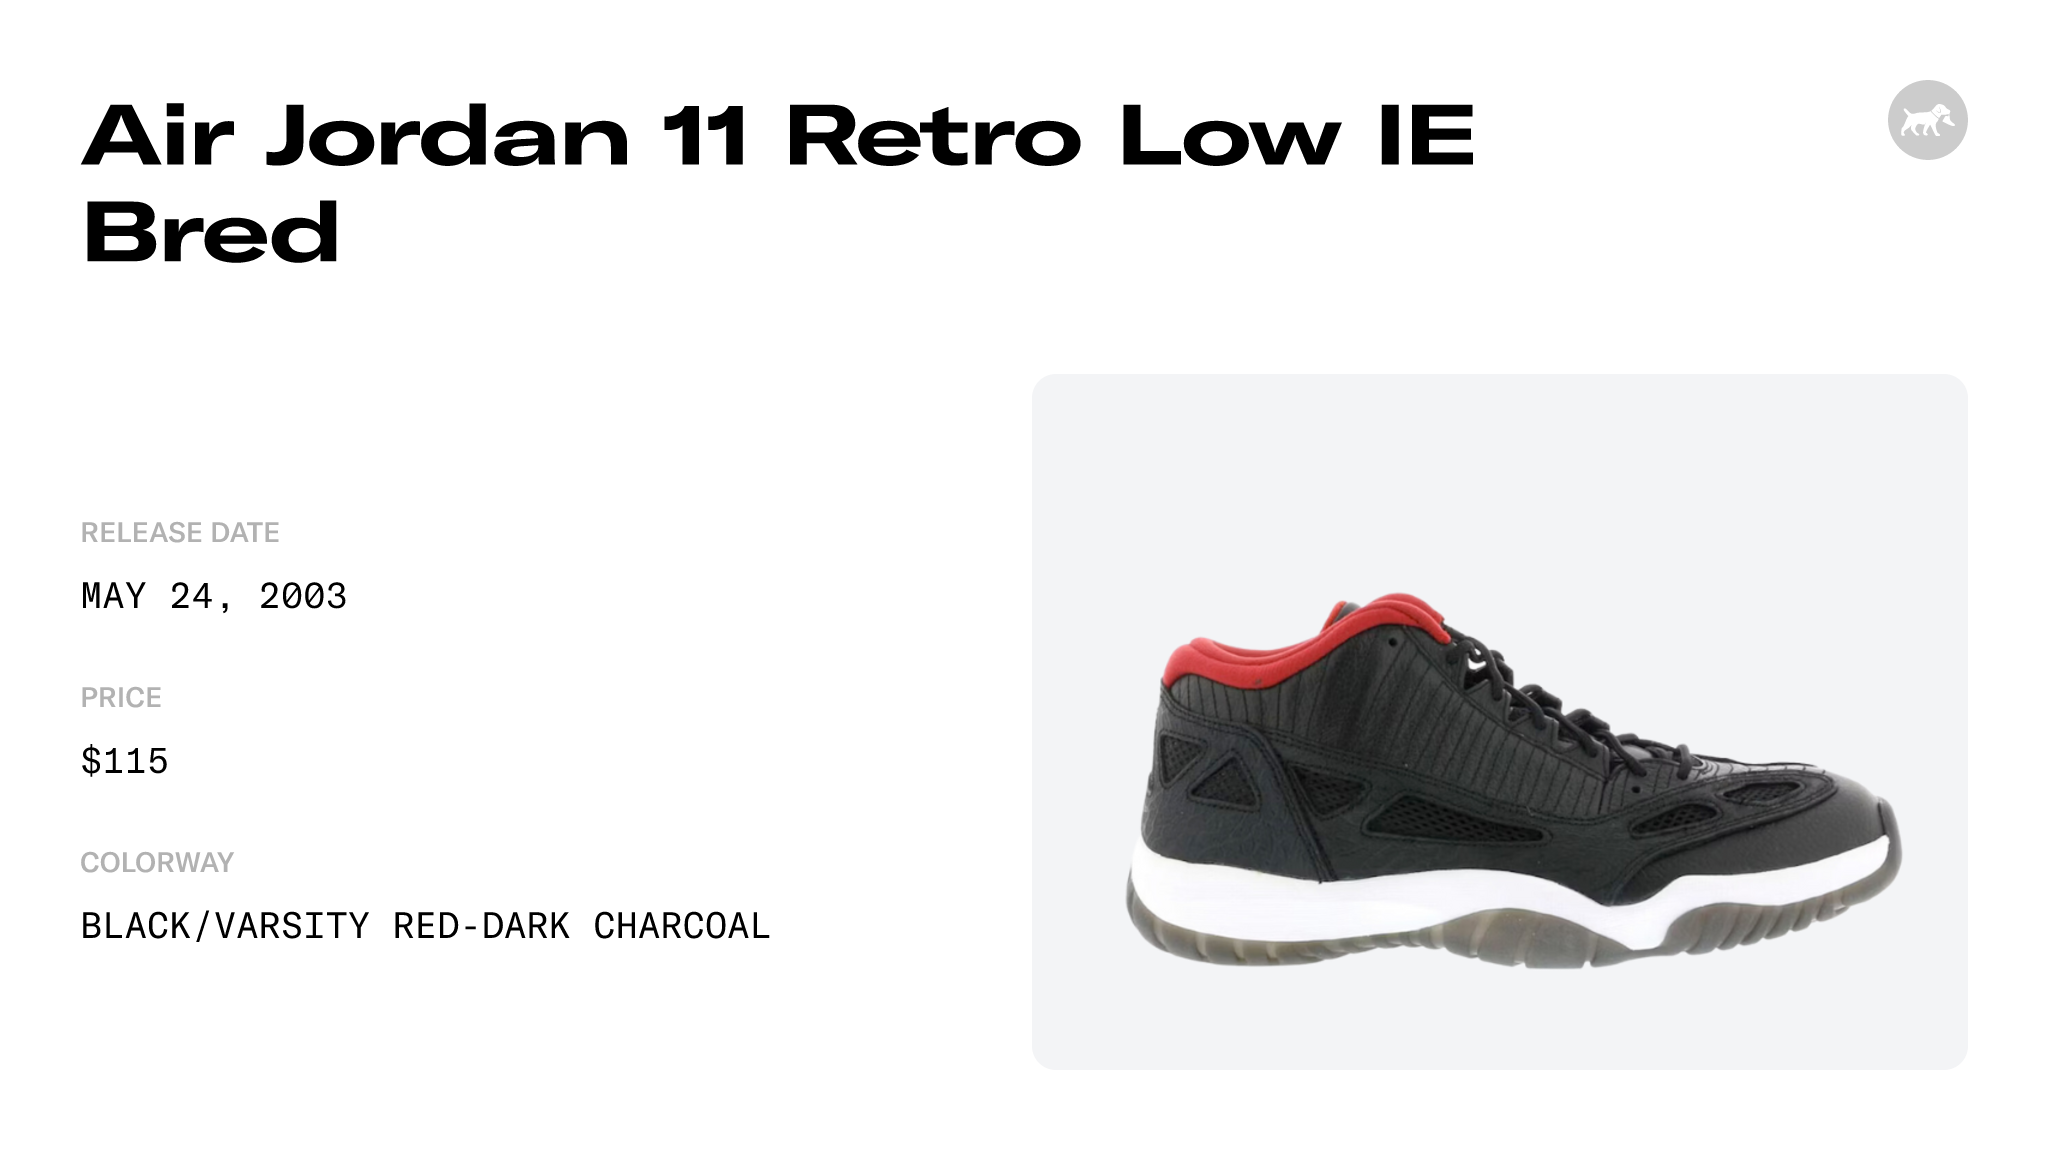 Air Jordan 11 Retro Low IE Bred - 306008-061 Raffles and Release Date